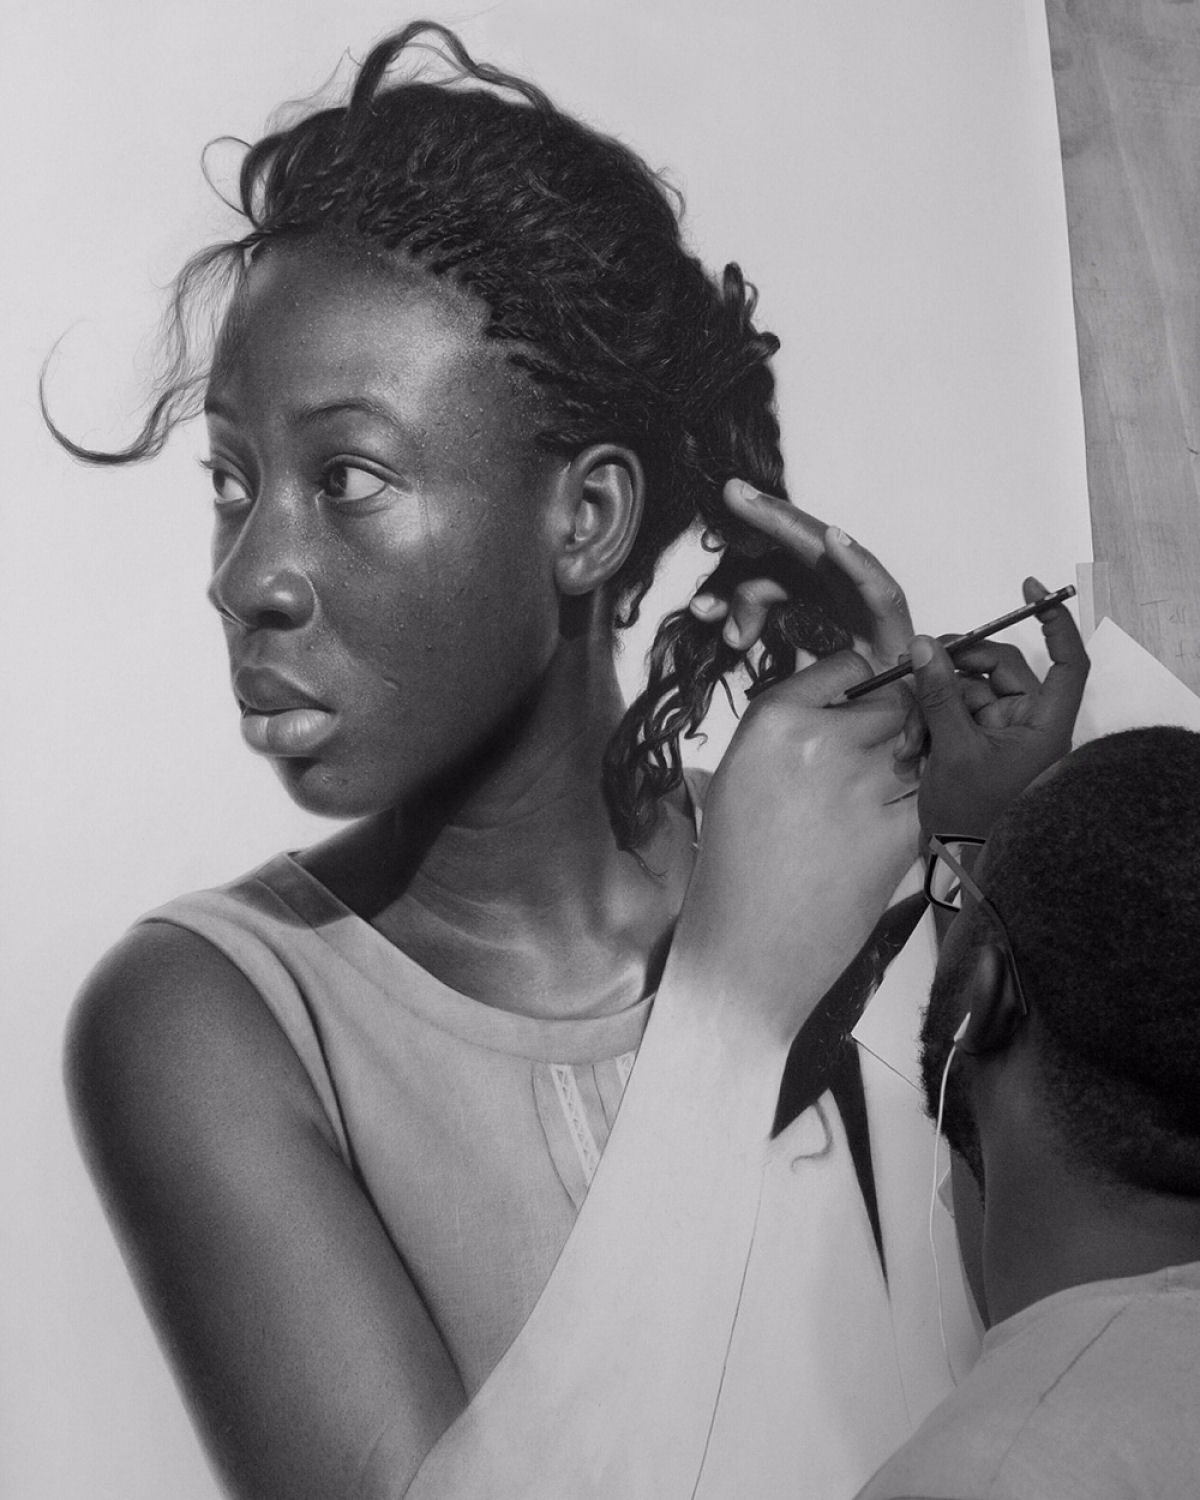 Os desenhos hiperrealistas desse artista nigeriano capturam momentos surreais e poderosas emoções 09